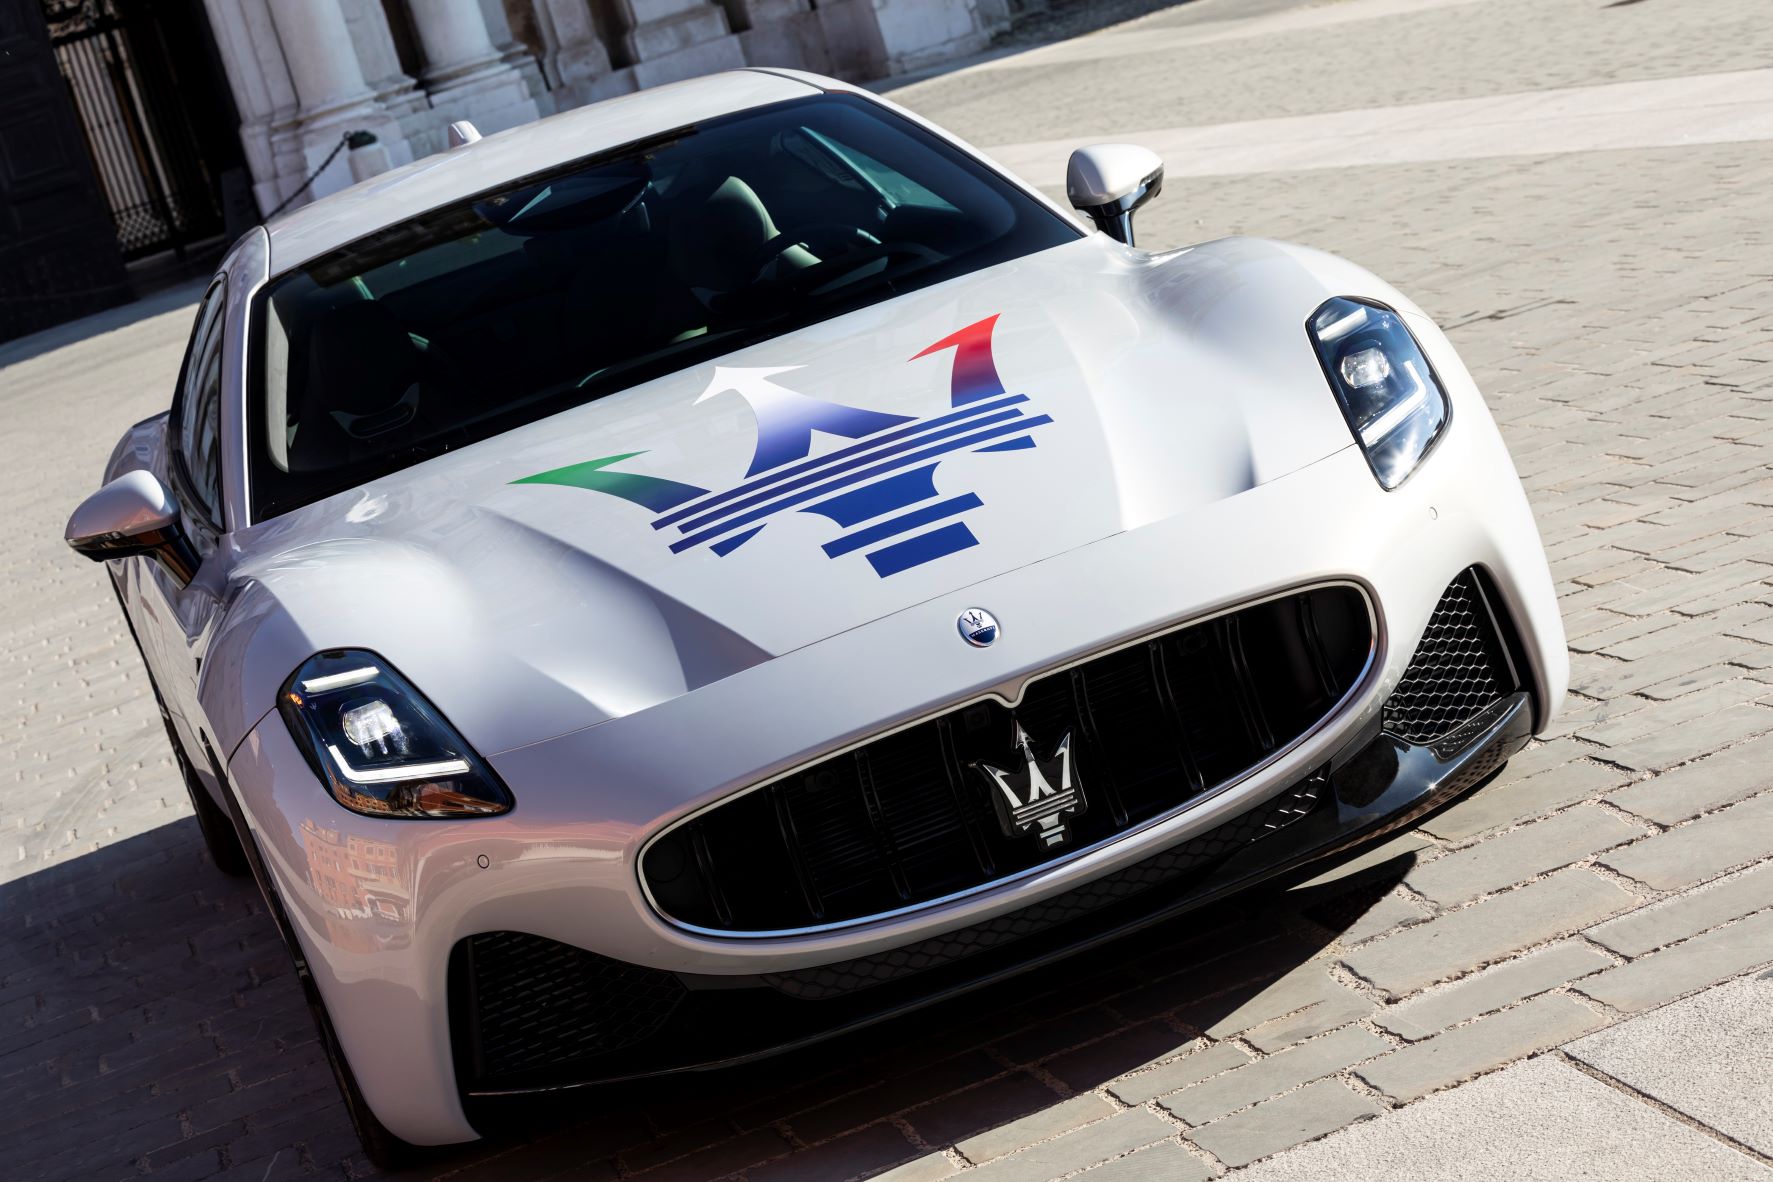 Front view of the new Maserati GranTurismo in white